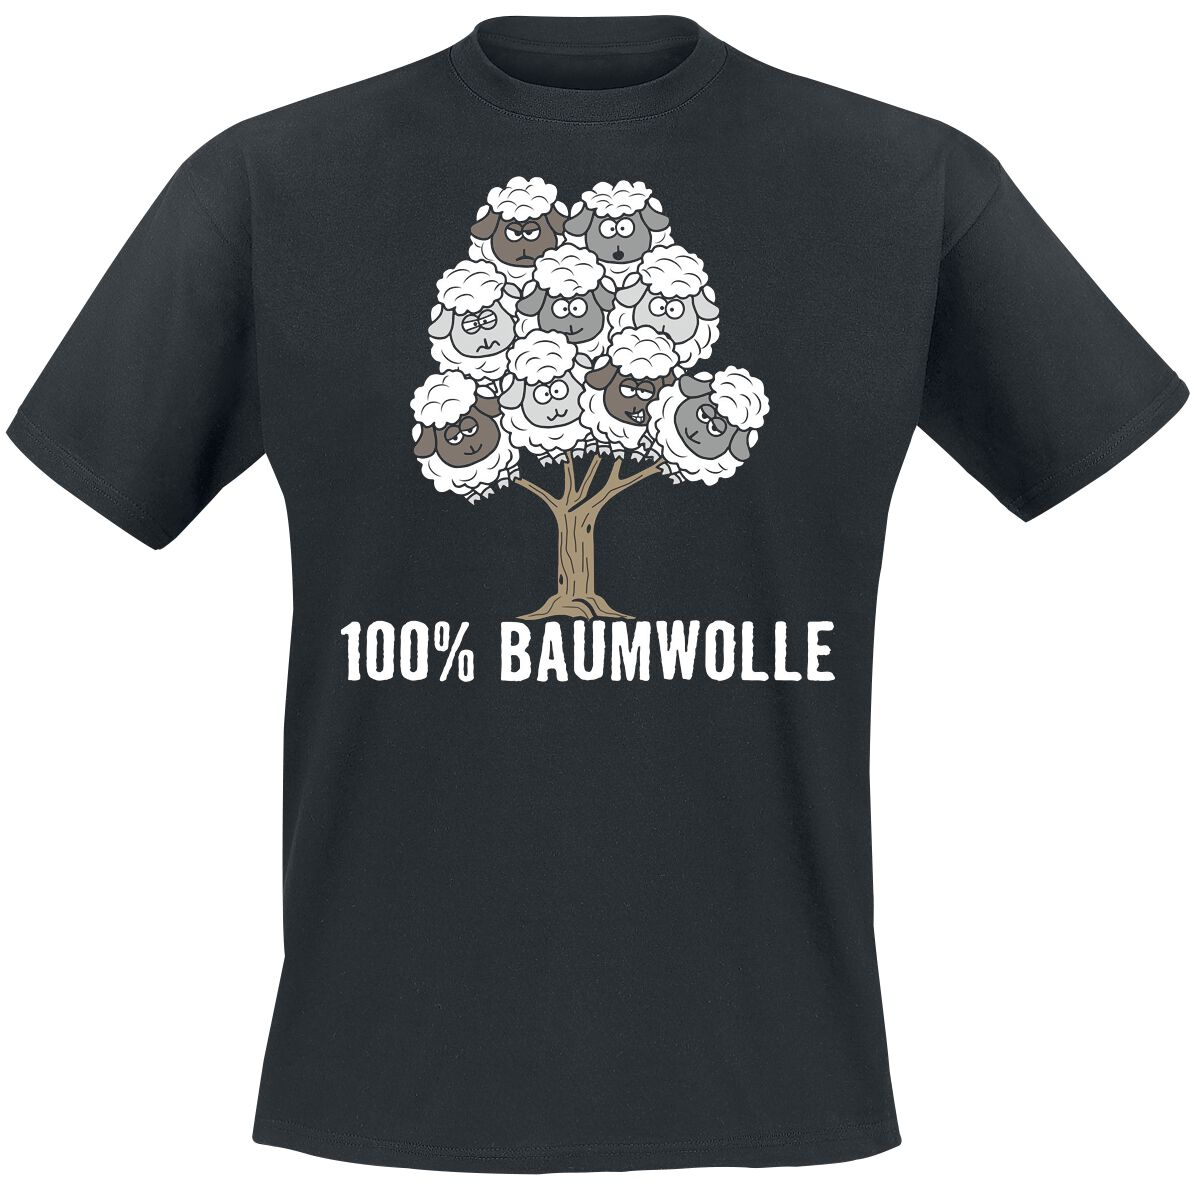 Tierisch T-Shirt - 100% Baumwolle - L bis 4XL - für Männer - Größe XXL - schwarz